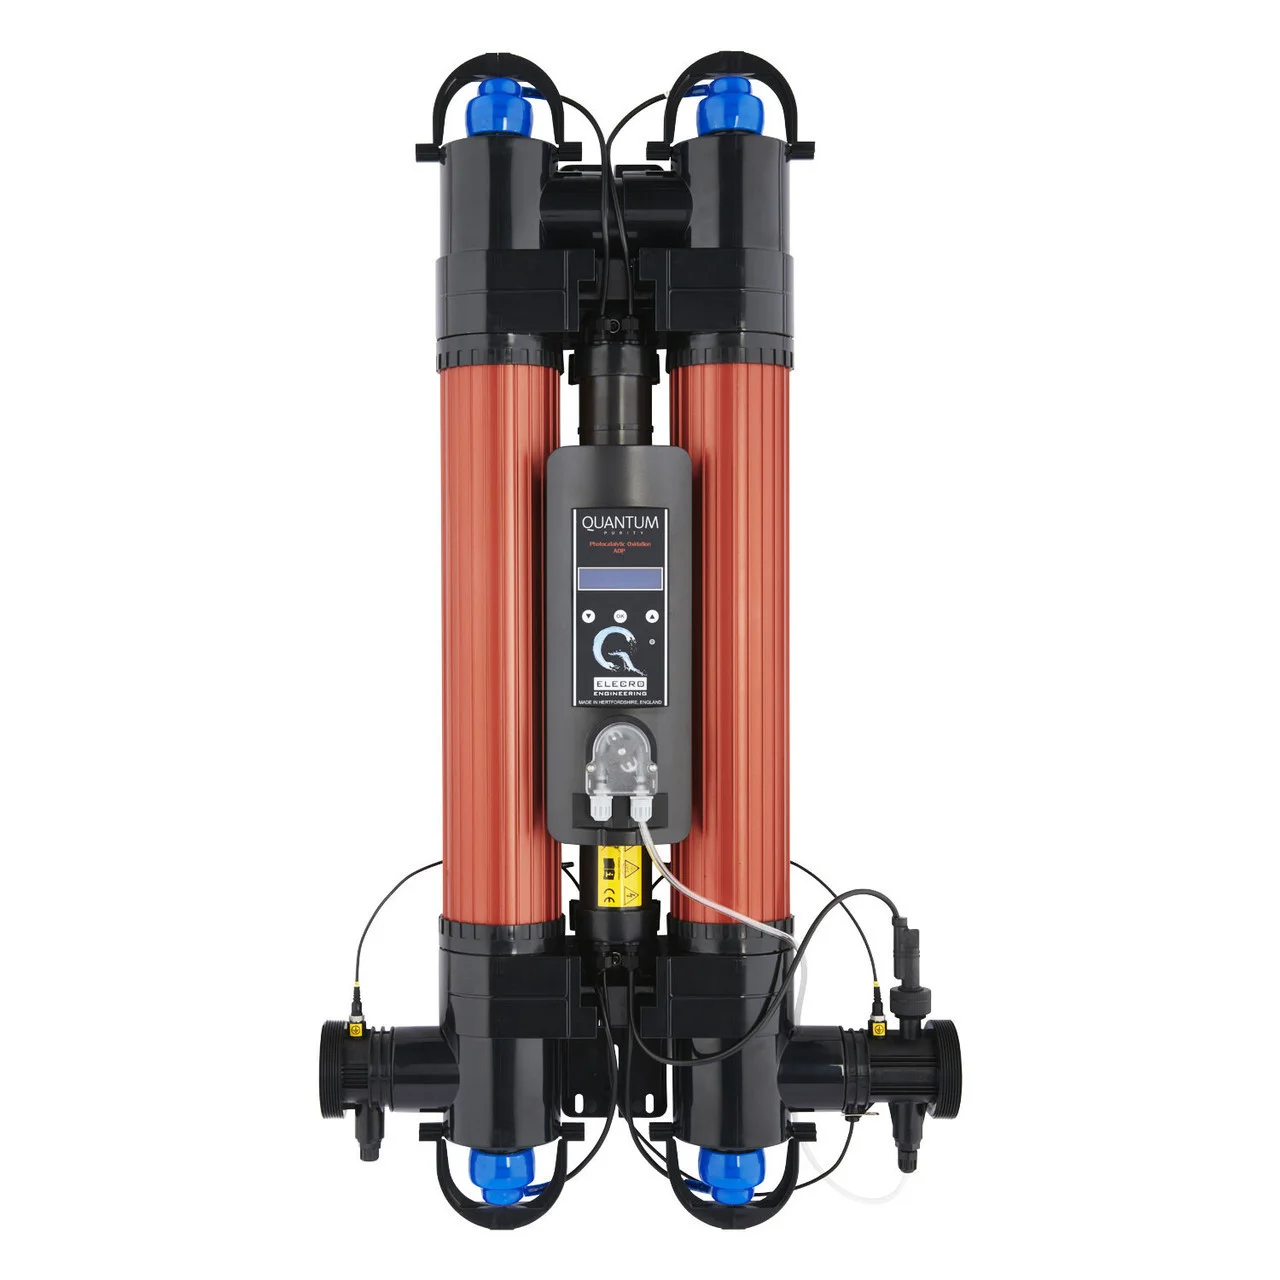 Ультрафиолетовая установка Elecro Quantum QP-130-EU для бассейна (Мощность 110 Вт, 28 м3/ч)